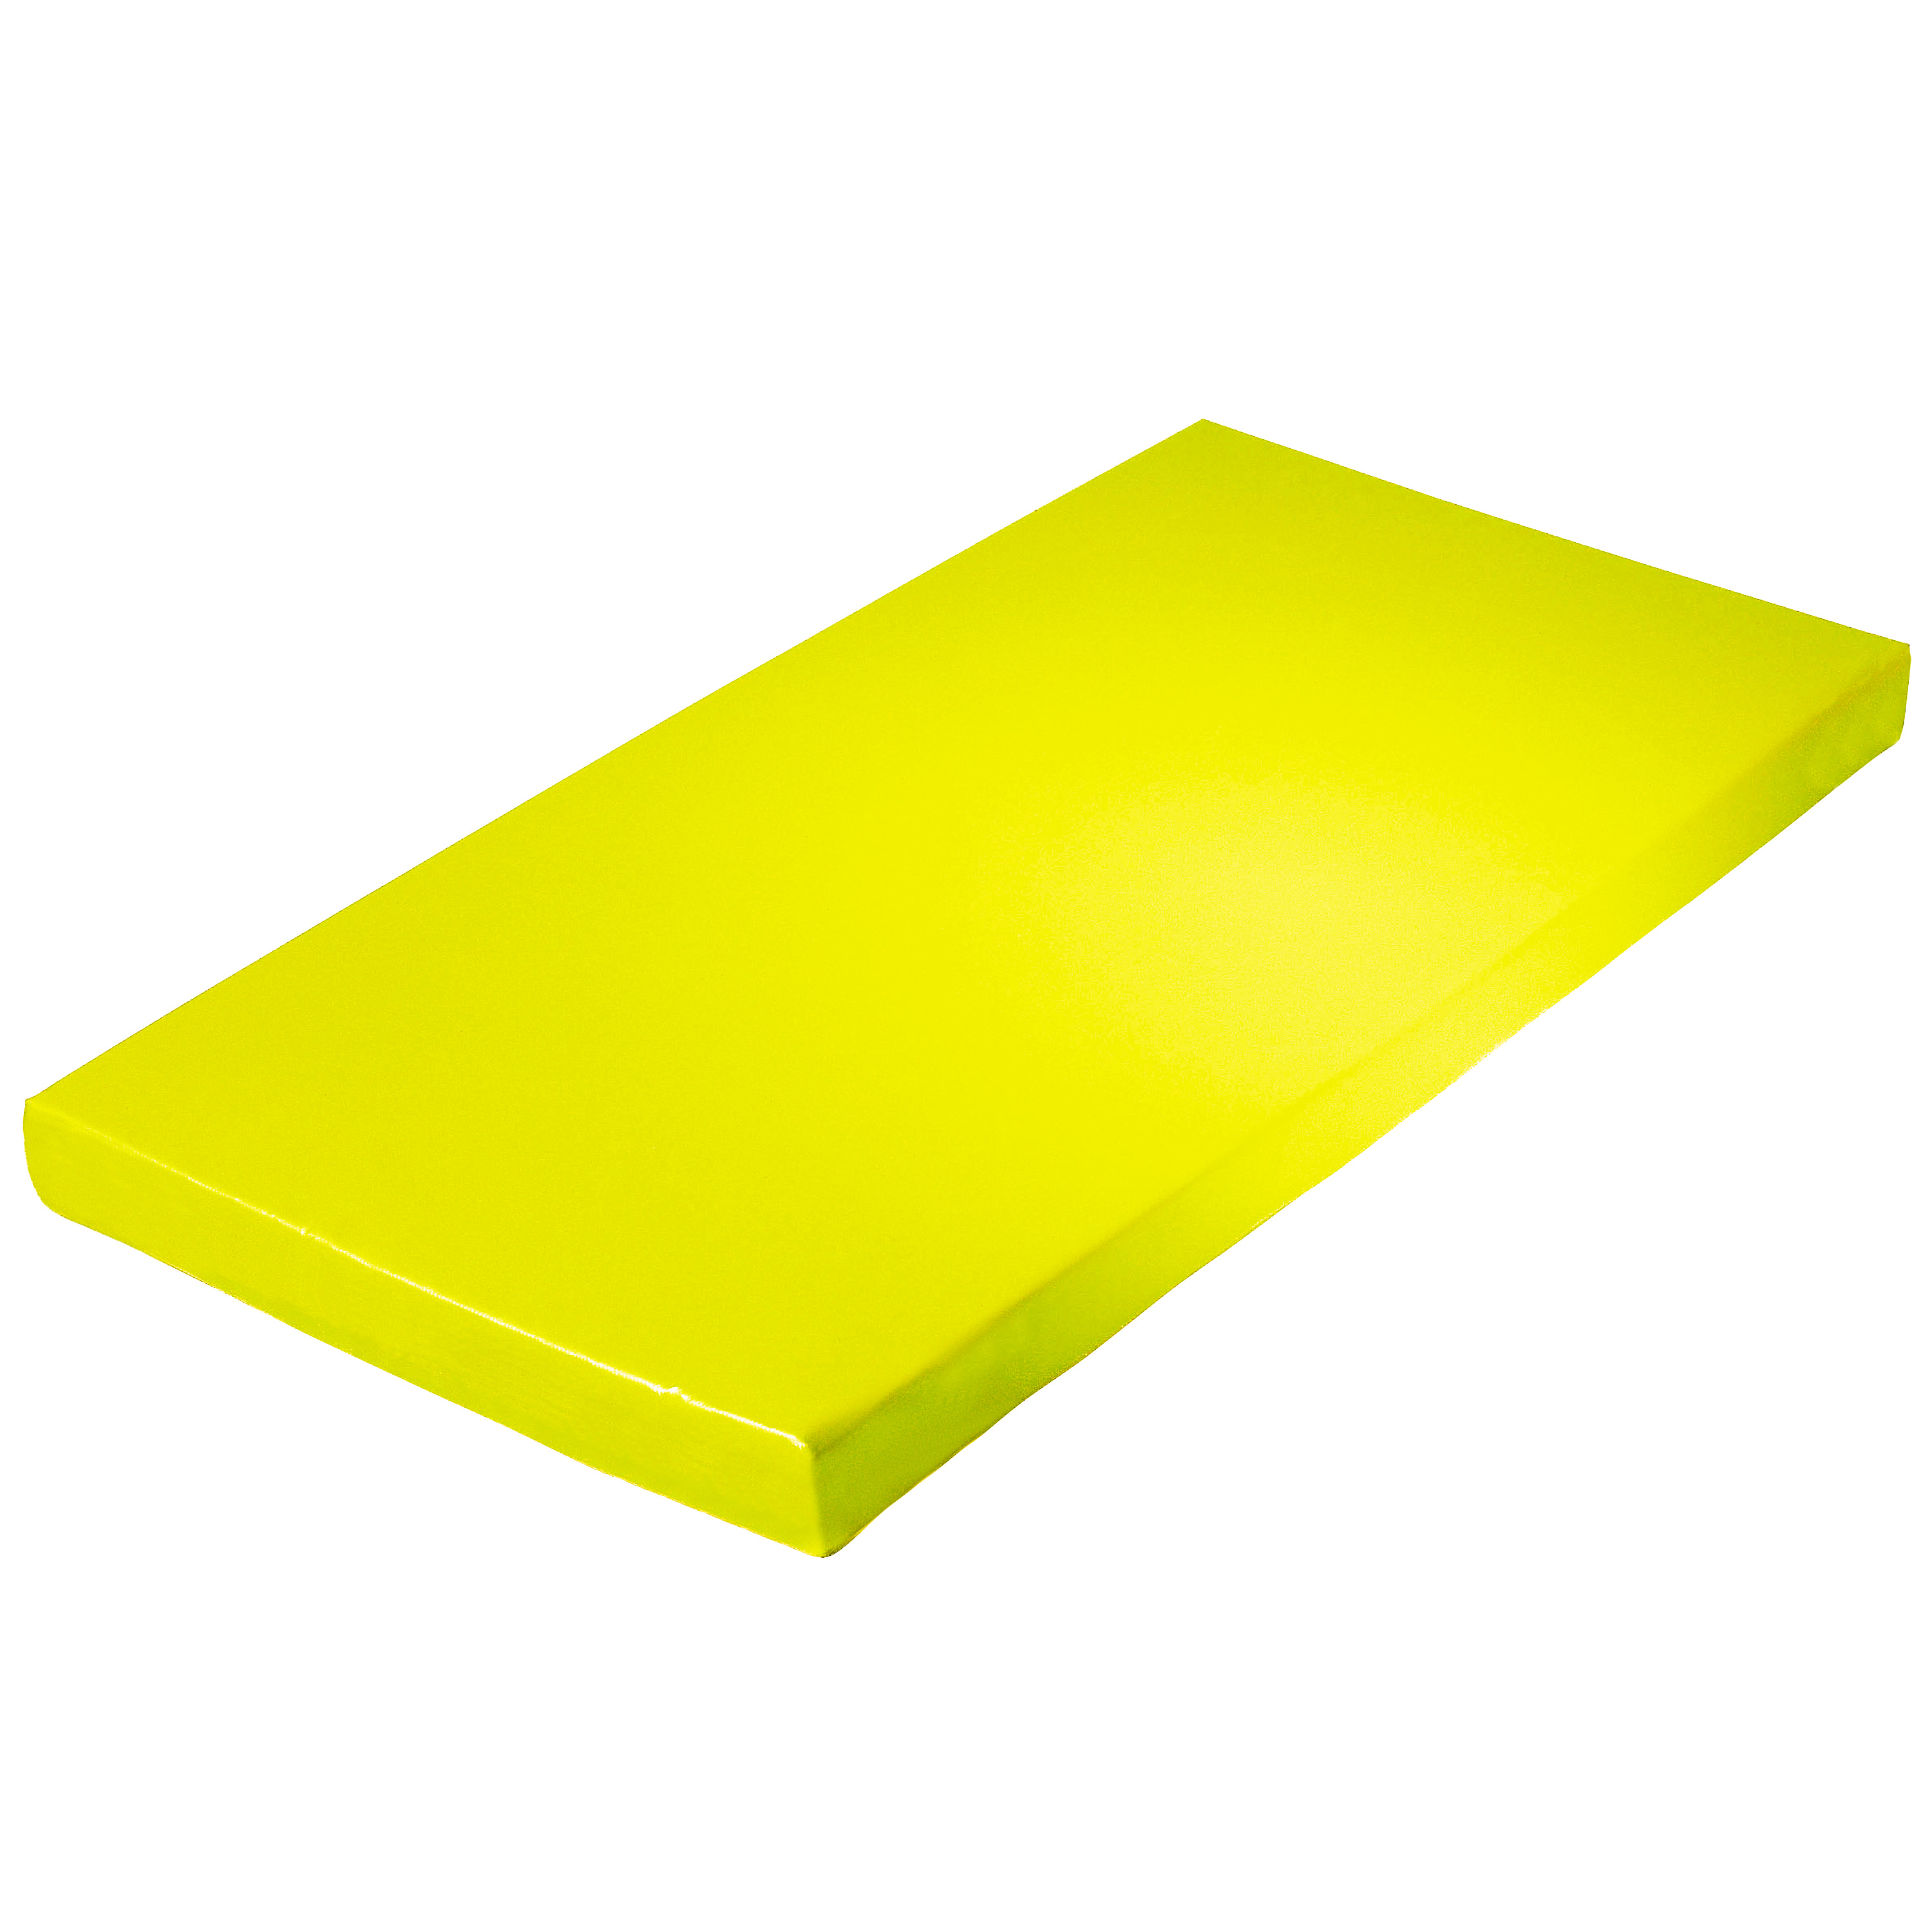 Super-Leichtturnmatte 200 x 125 x 6 cm, gelb